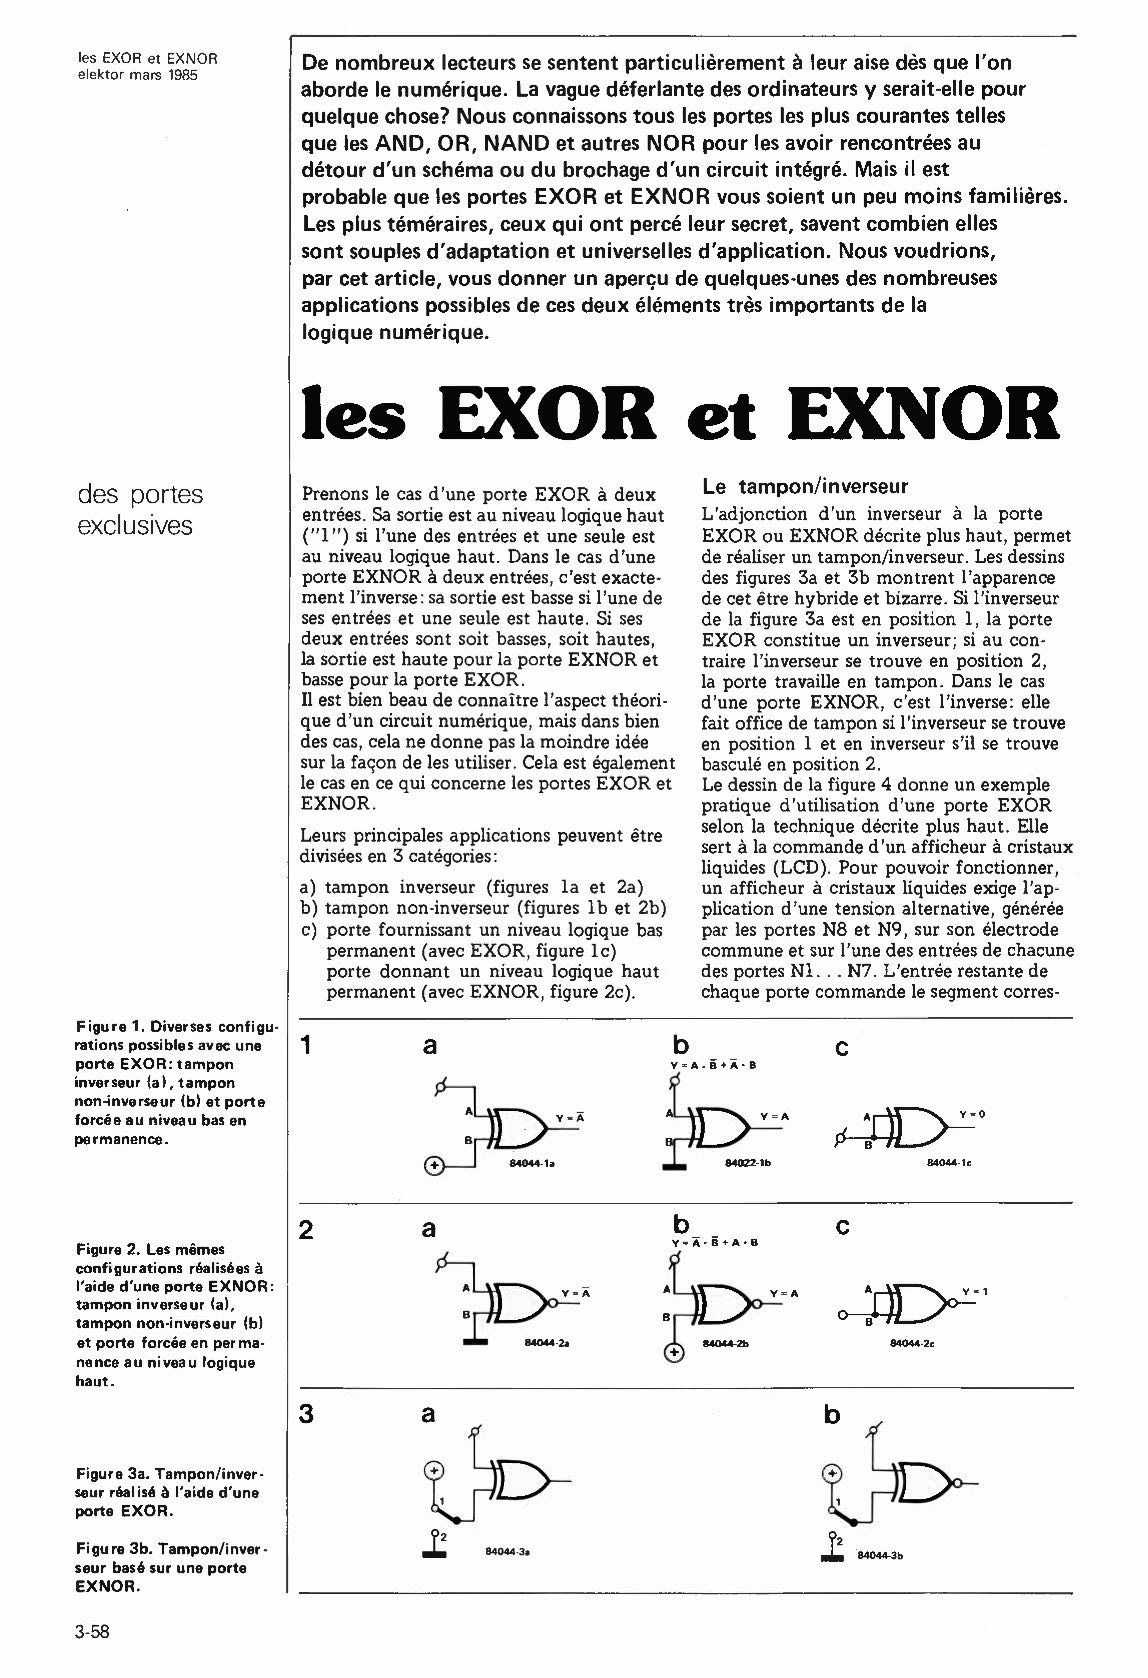 les EXOR et EXNOR